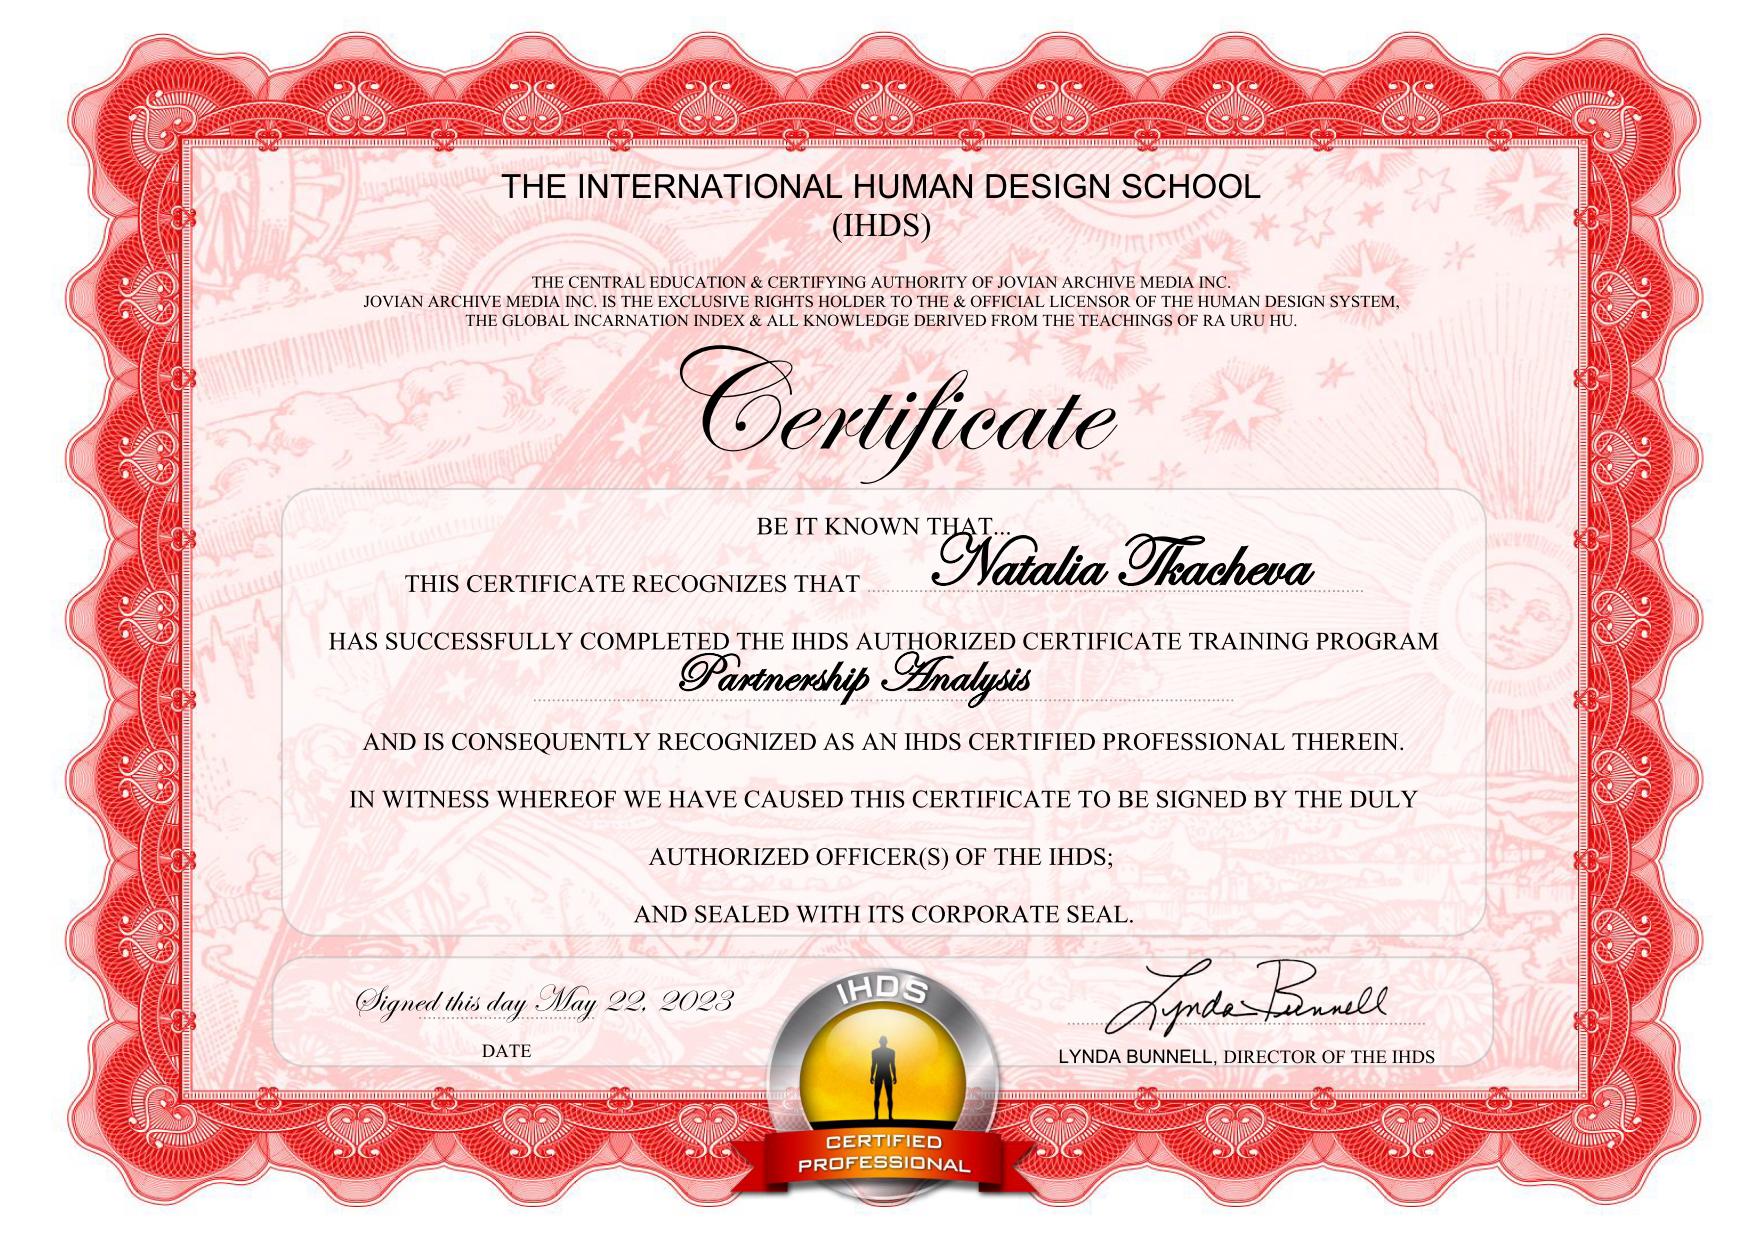 Natalia Tkacheva Partnership Analysis Certificate_01